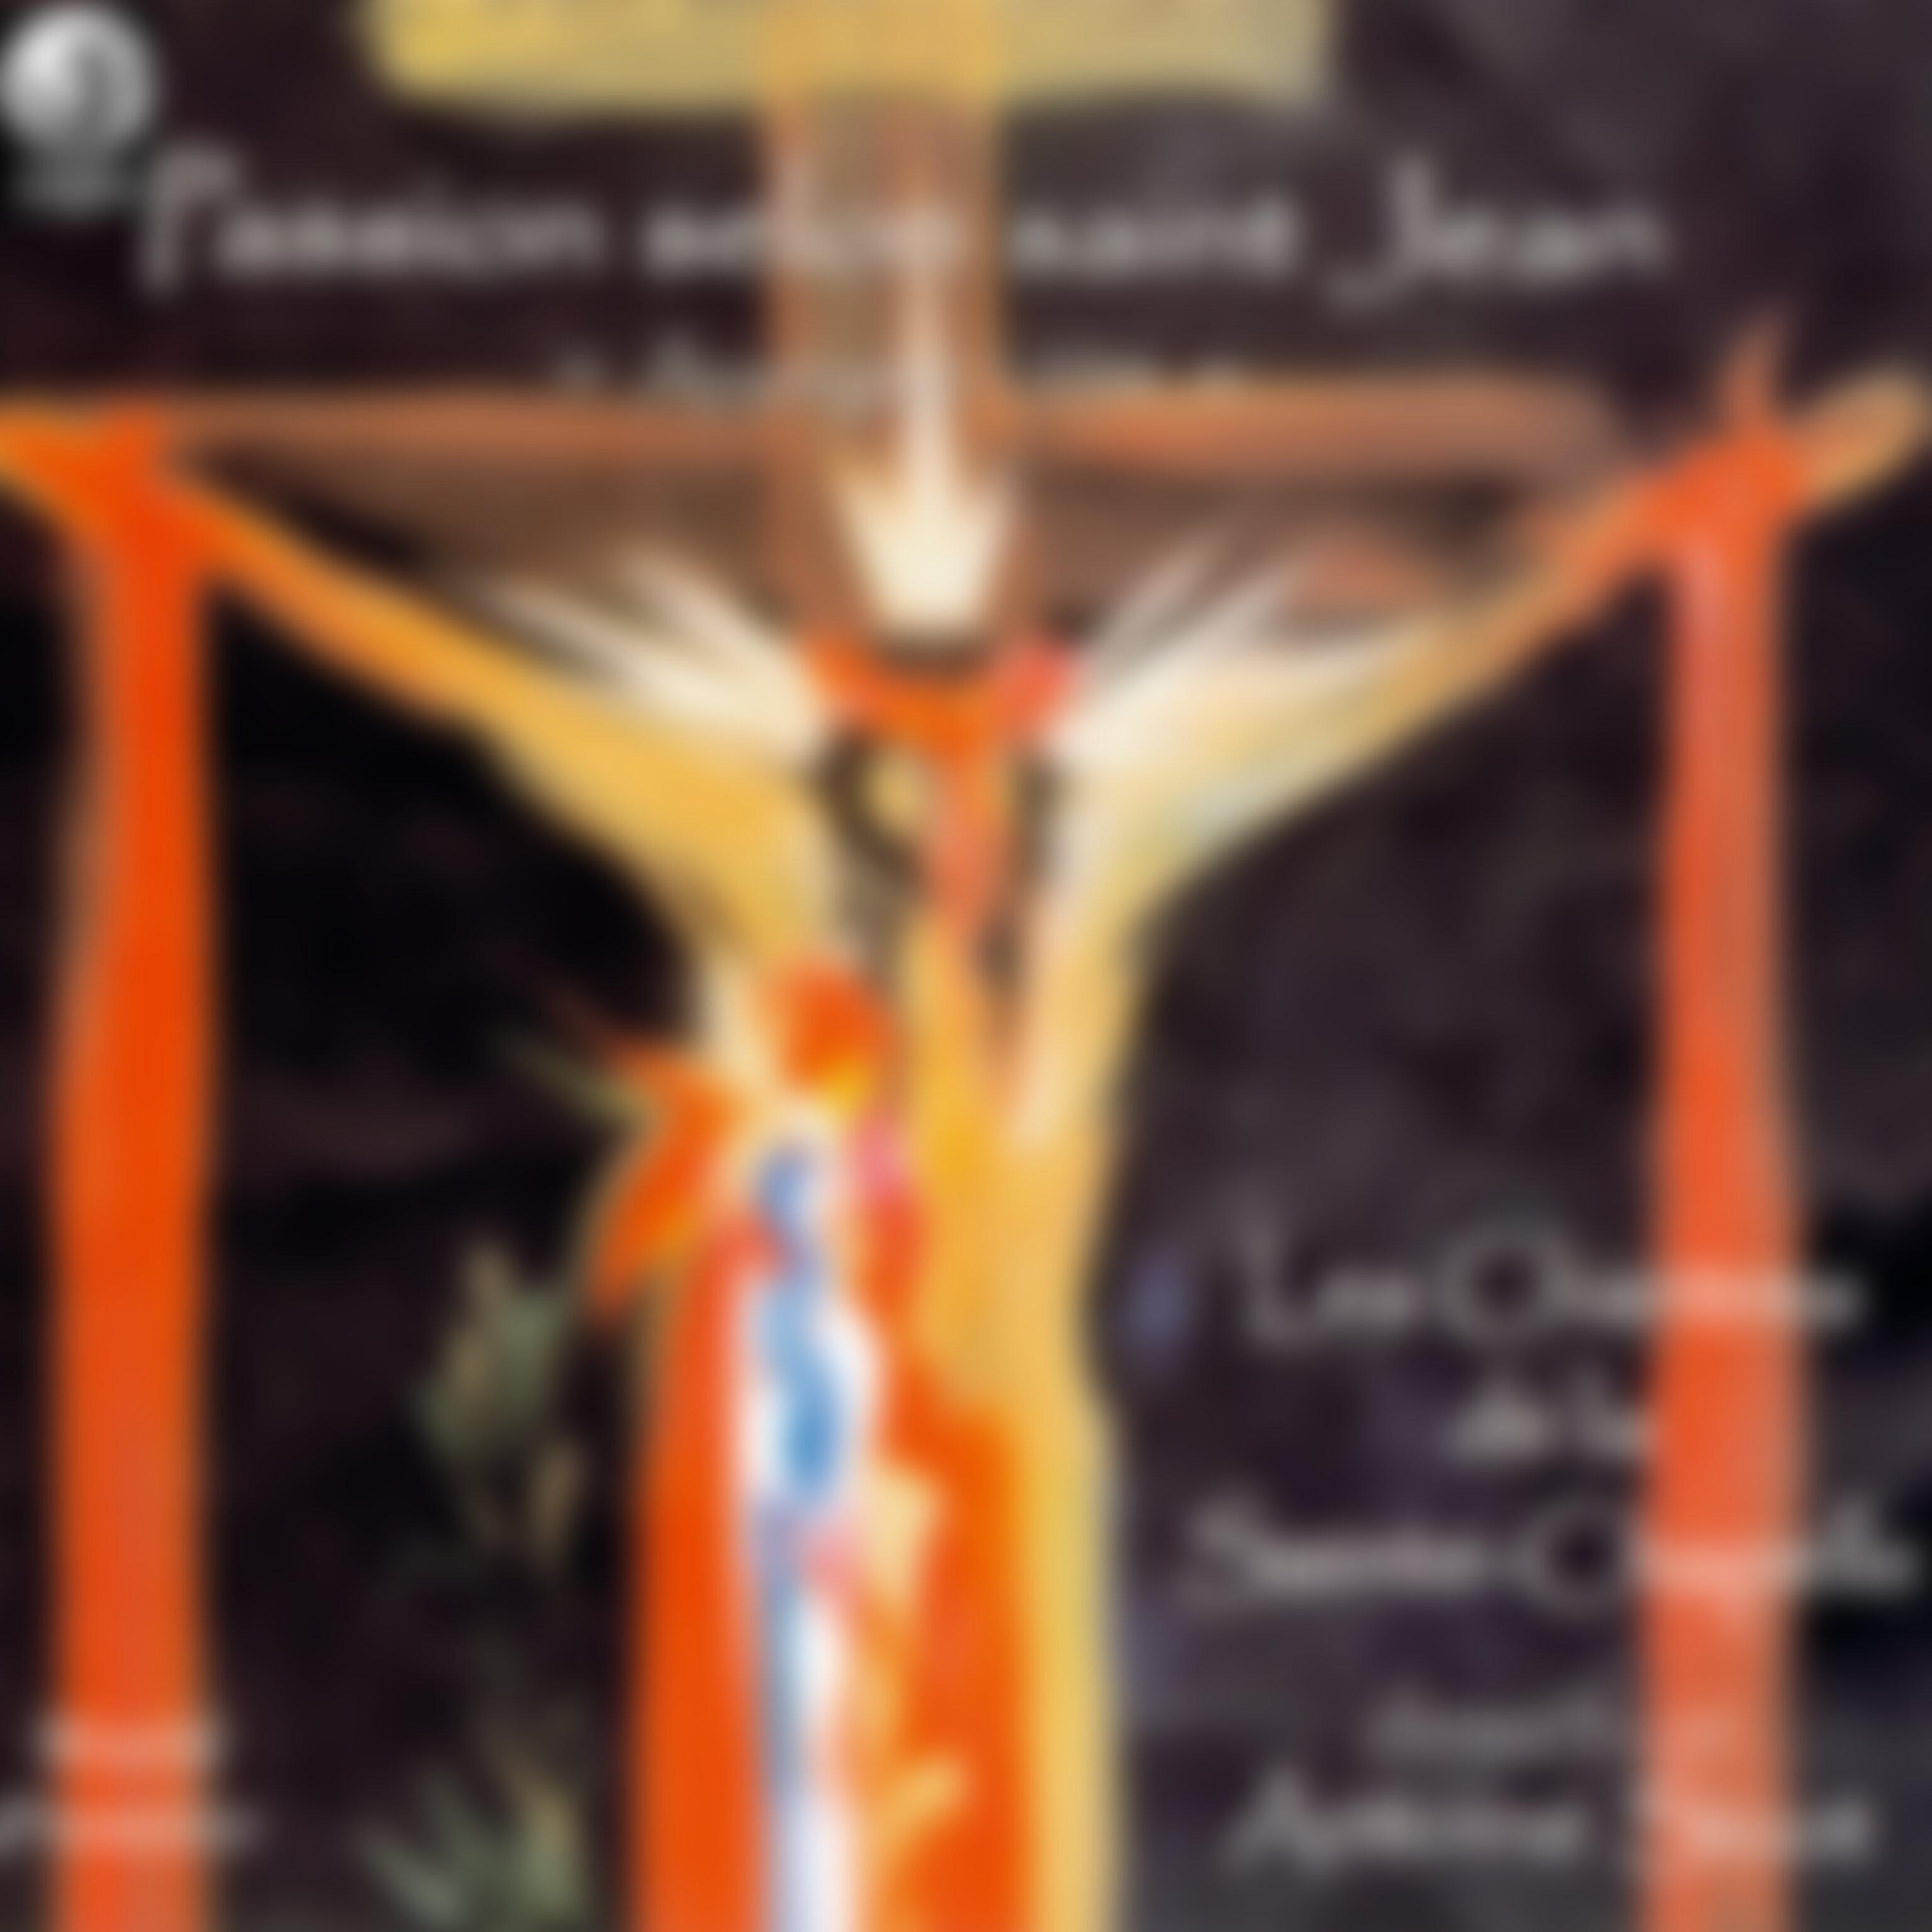 Les Chantres de la Sainte-Chapelle - Passion selon saint Jean: Chap. XVIII, 28 